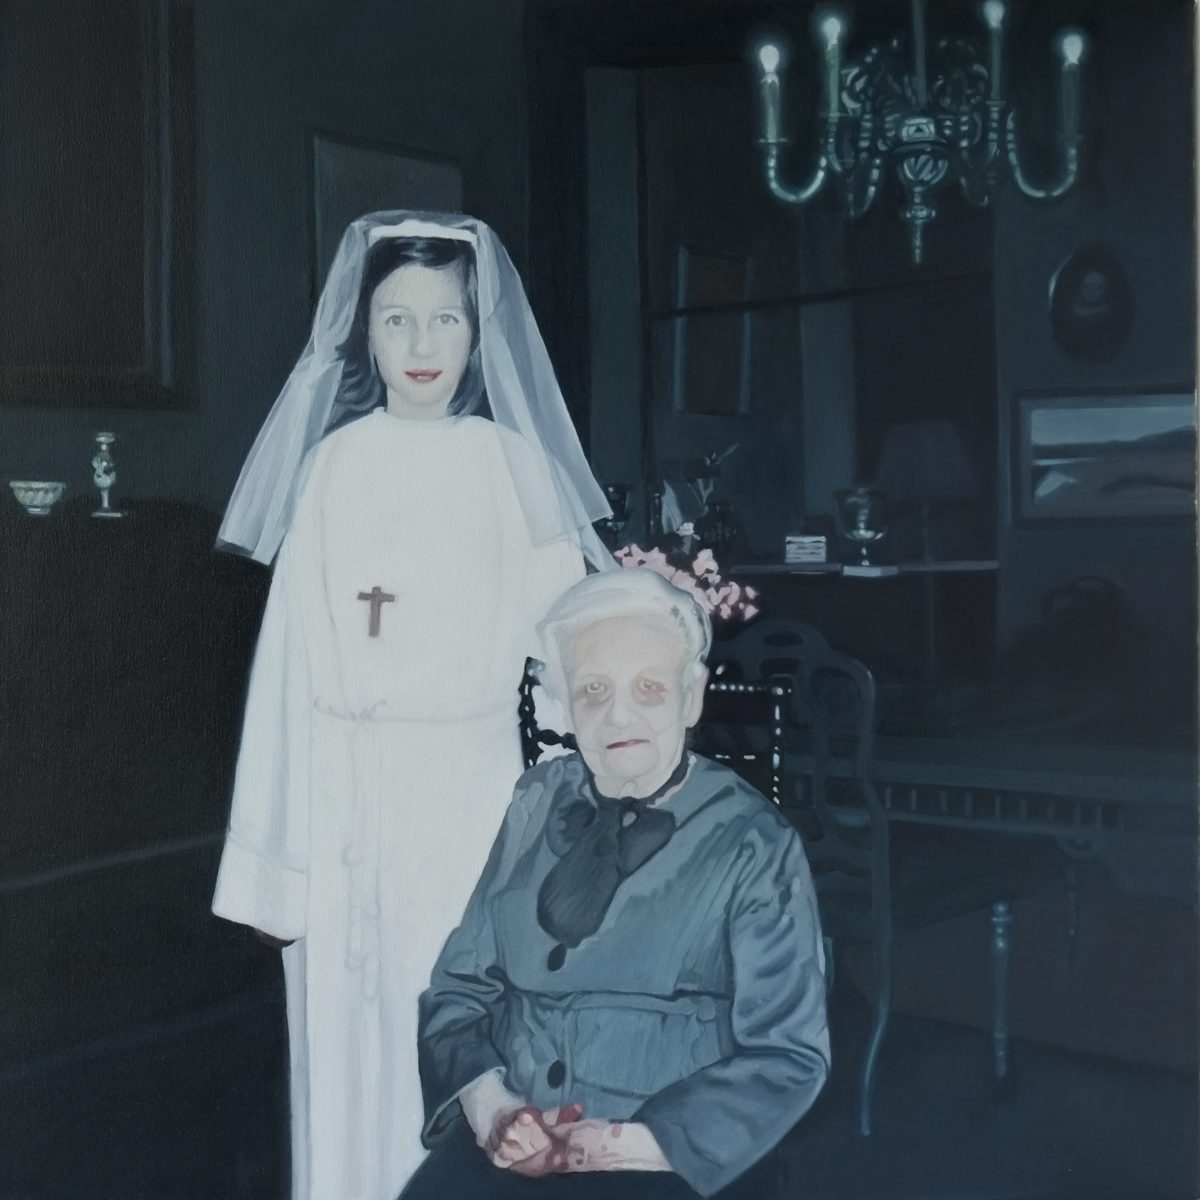 DELEFORTRIE Dominique, Portrait de famille, 2021, huile sur toile, 60 x 60 cm